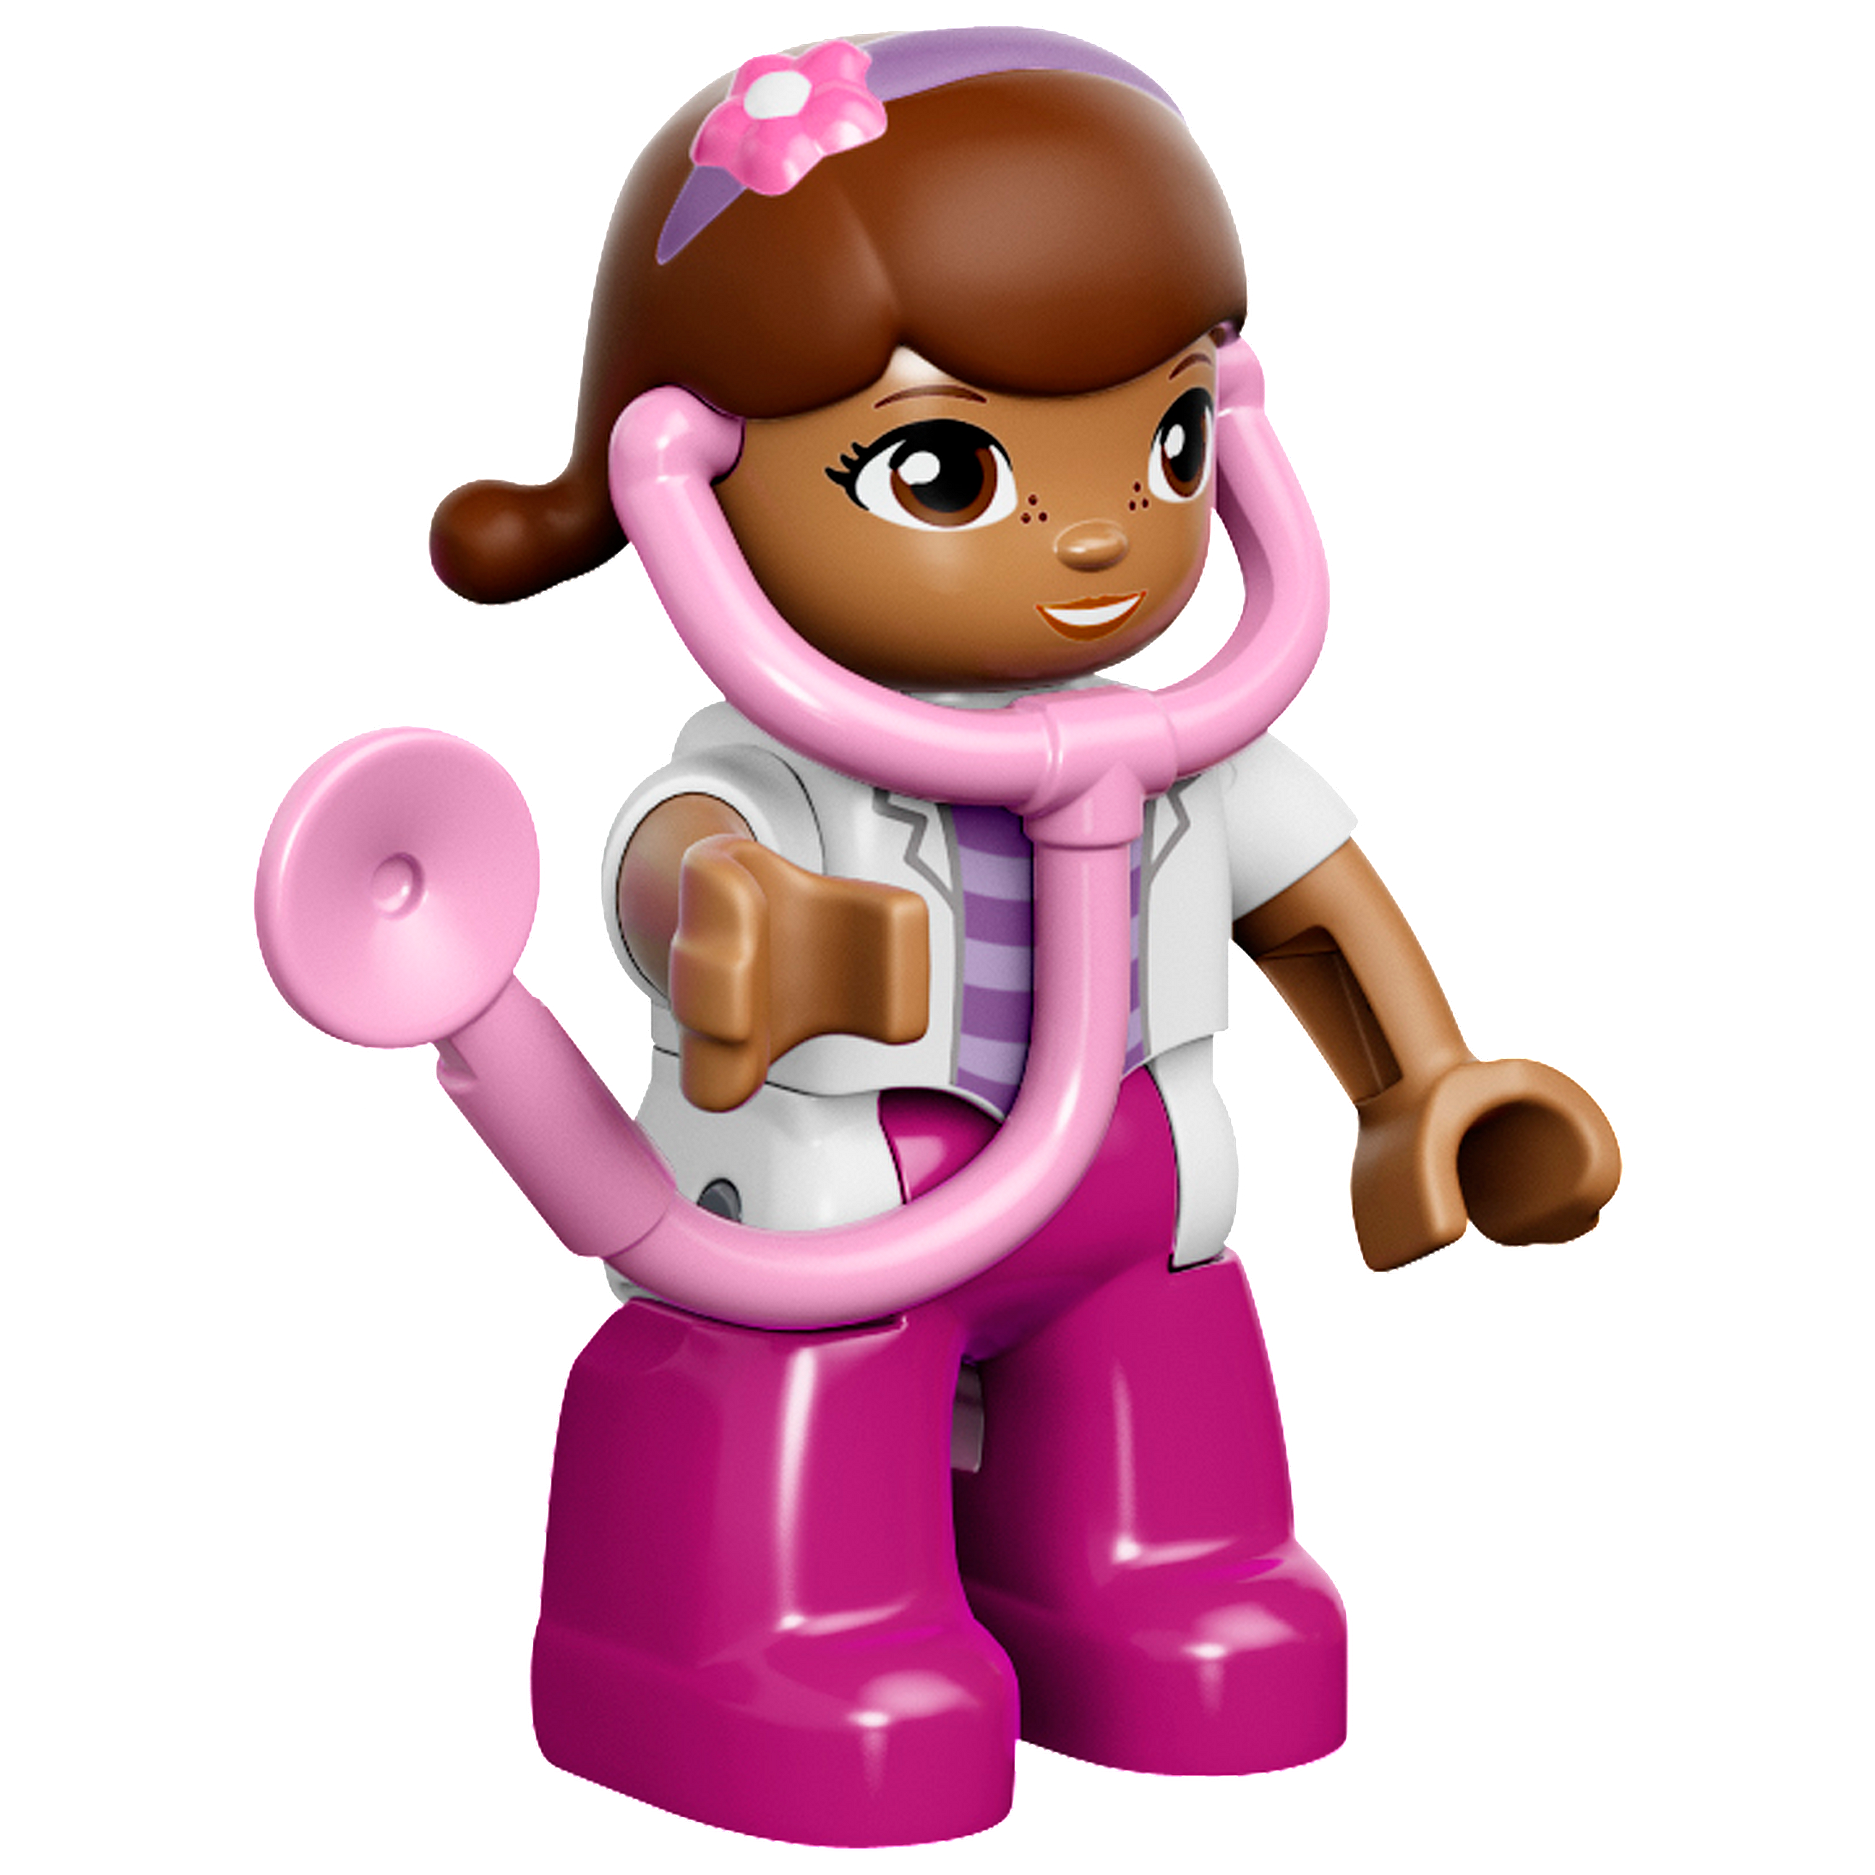 LEGO Duplo - La clinique de Docteur La Peluche - 10606